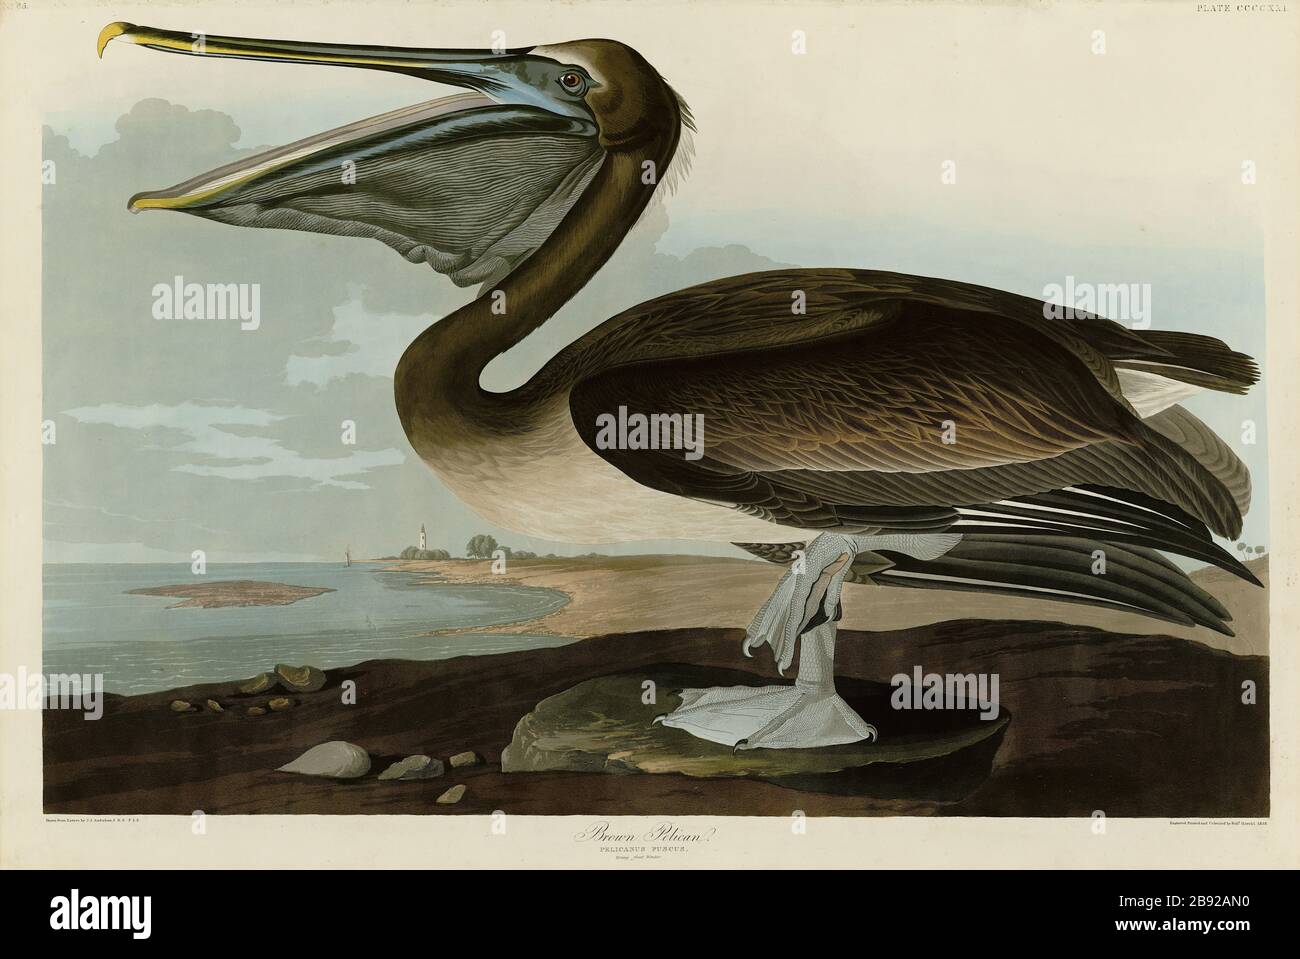 Platte 421 Brown Pelican, von The Birds of America Folio (187-184) von John James Audubon - sehr hochauflösendes und qualitativ hochwertiges bearbeitetes Bild Stockfoto